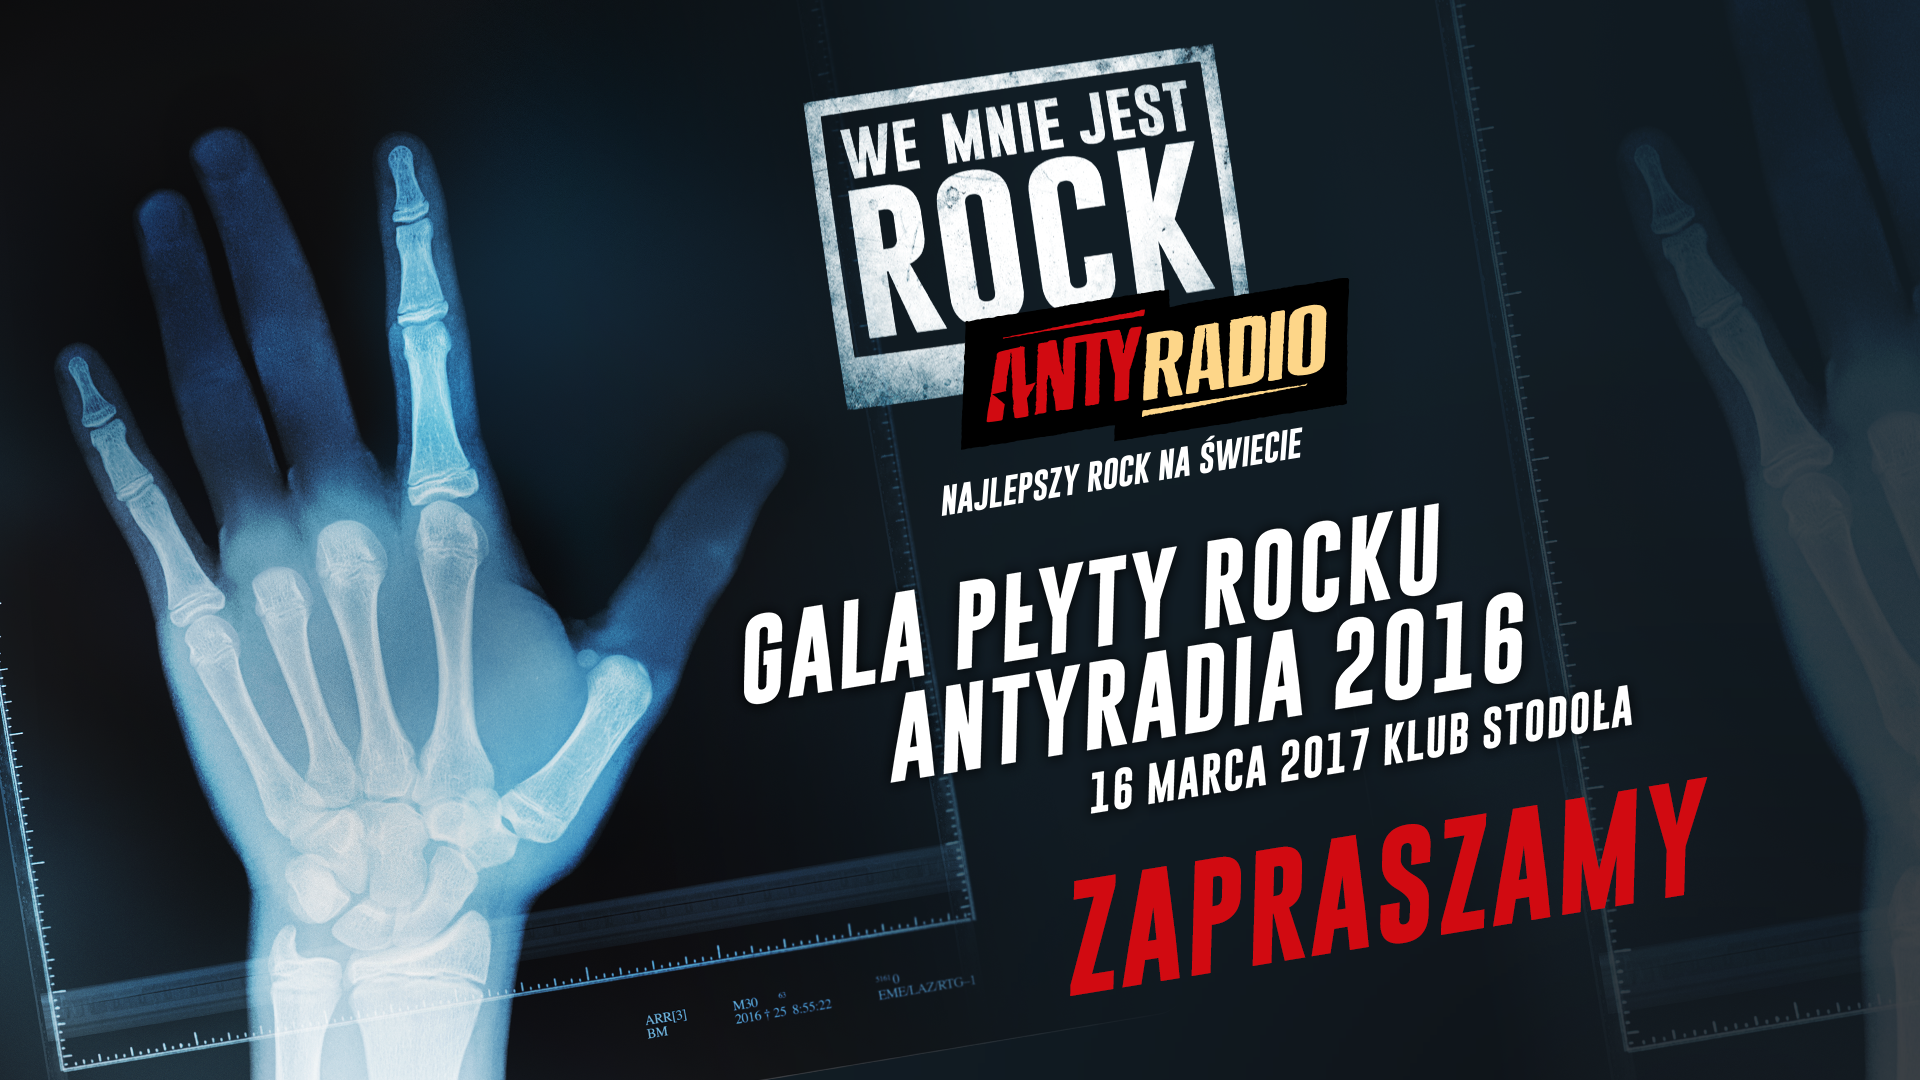 Jutro (16.03.) Gala “Płyta Rocku Antyradia 2016” w warszawskiej Stodole! 